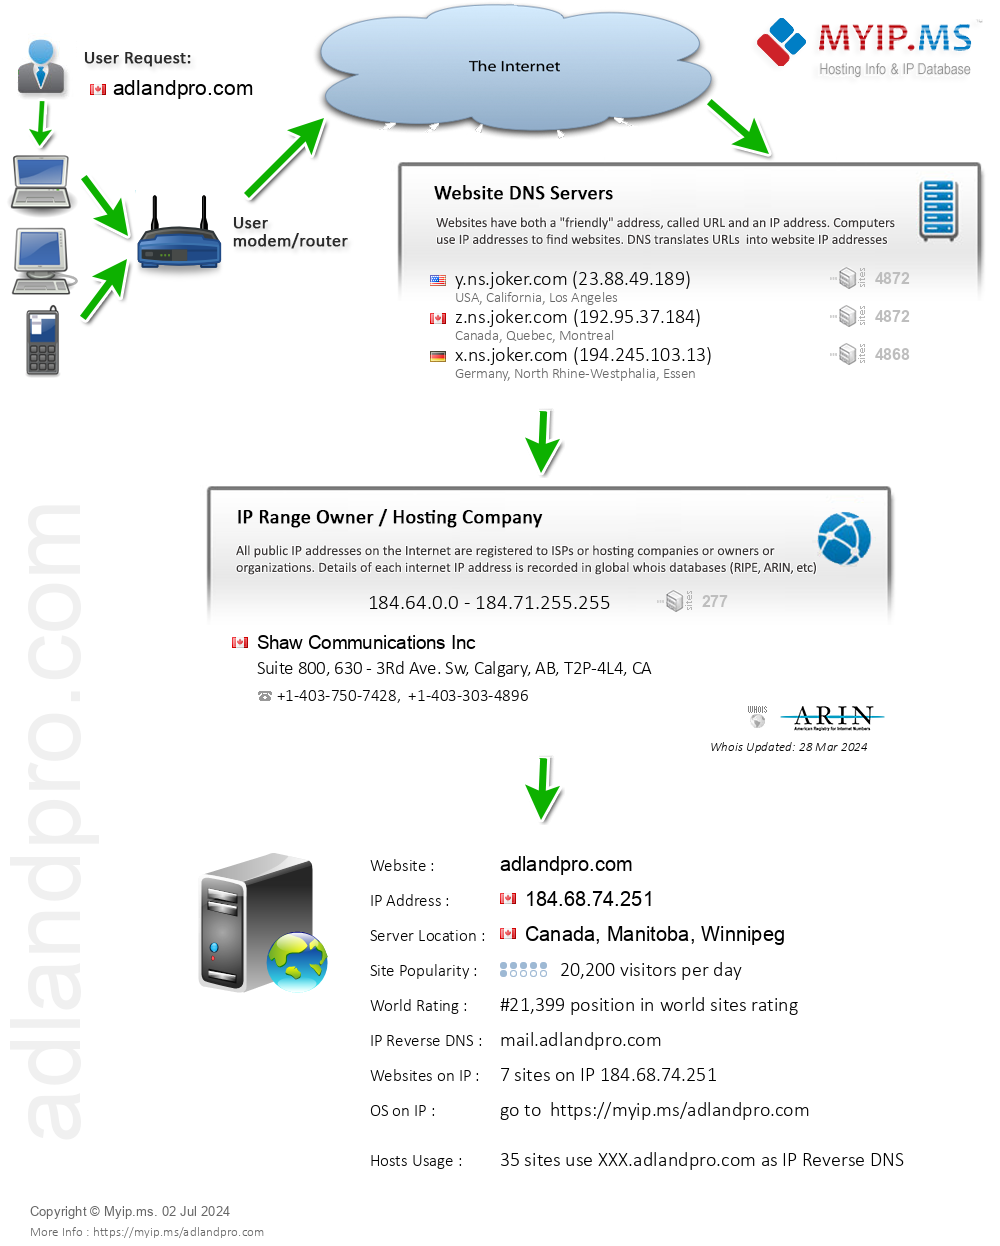 Adlandpro.com - Website Hosting Visual IP Diagram